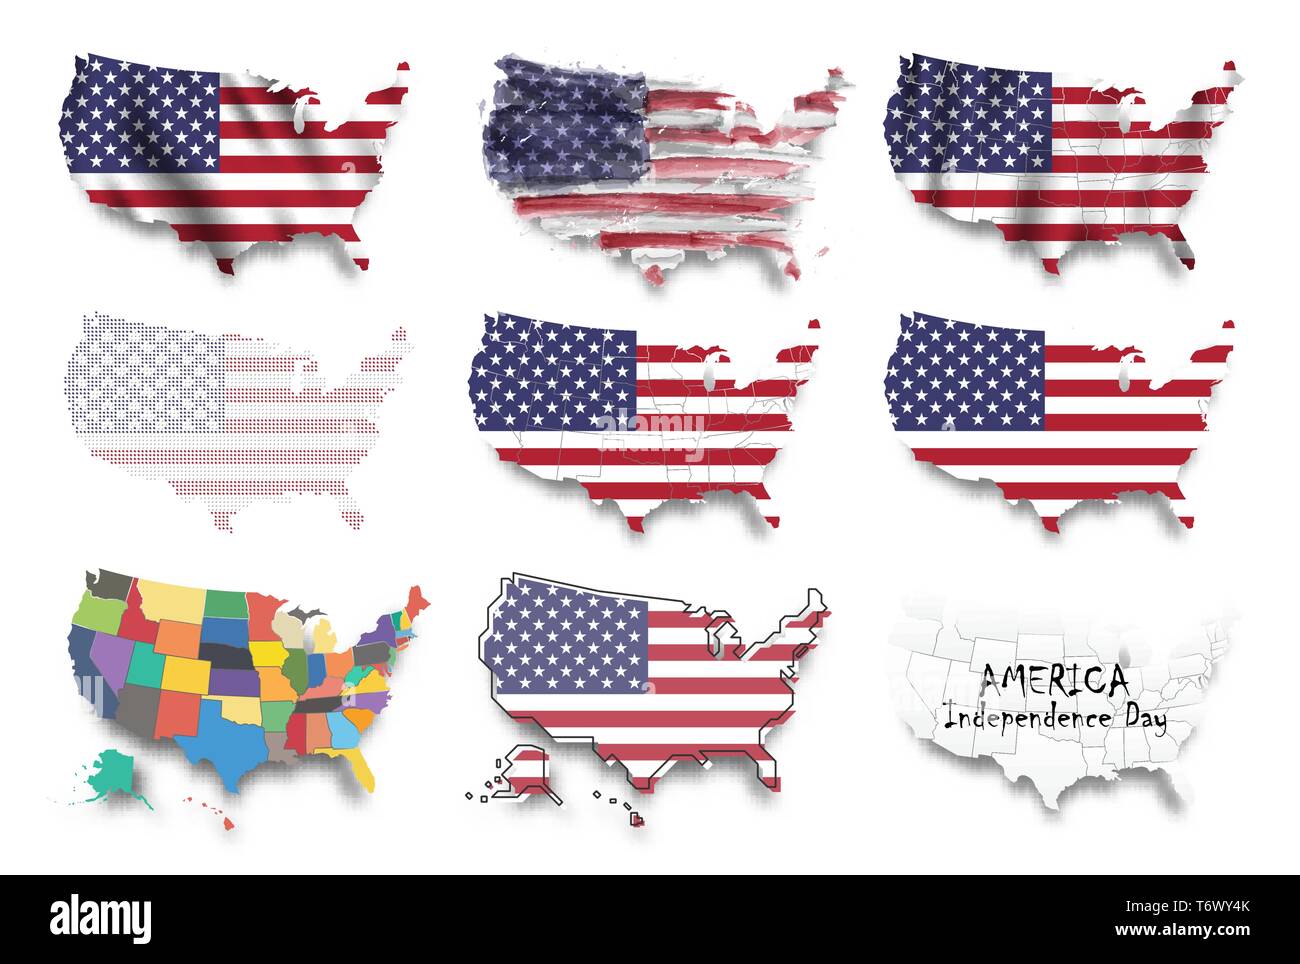 Vereinigte Staaten von Amerika Karte und Flags gesetzt. Mehrere grafische Gestaltung wie winken, Aquarell Malerei, gepunktete Stil, etc. Tag der Unabhängigkeit conc Stock Vektor